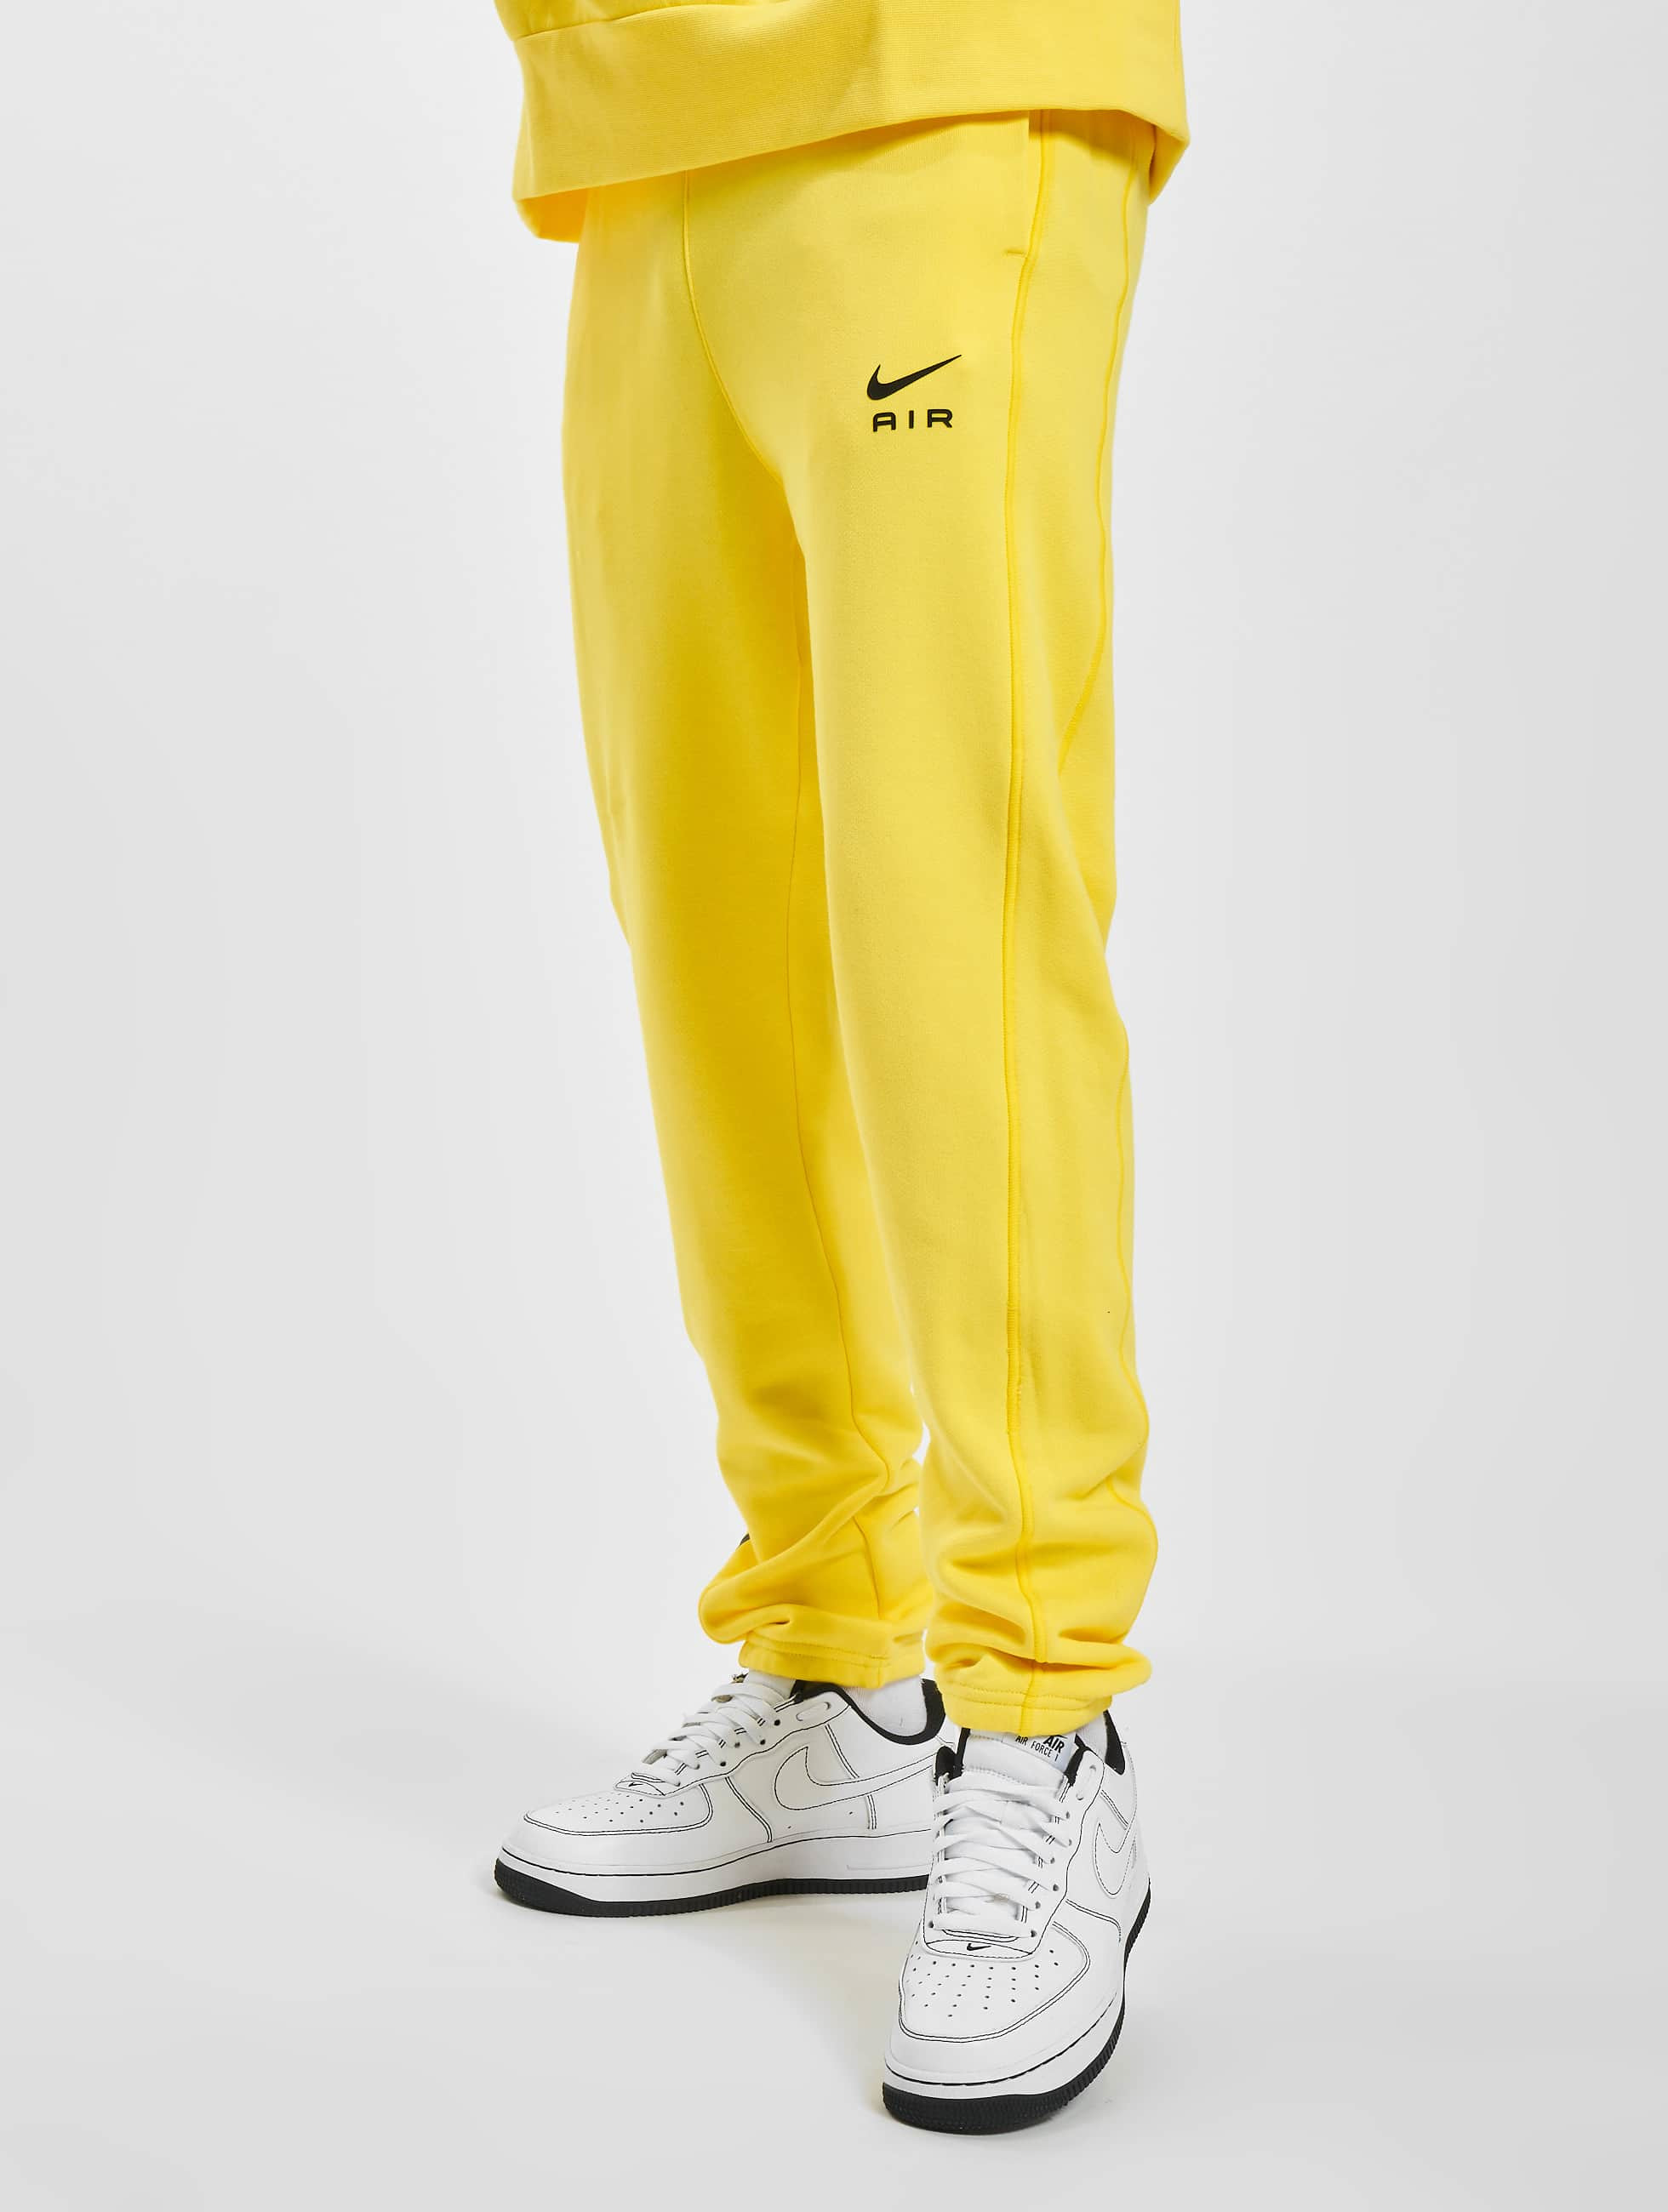 prototype Dapperheid Andrew Halliday Nike broek / joggingbroek Air in geel 974876